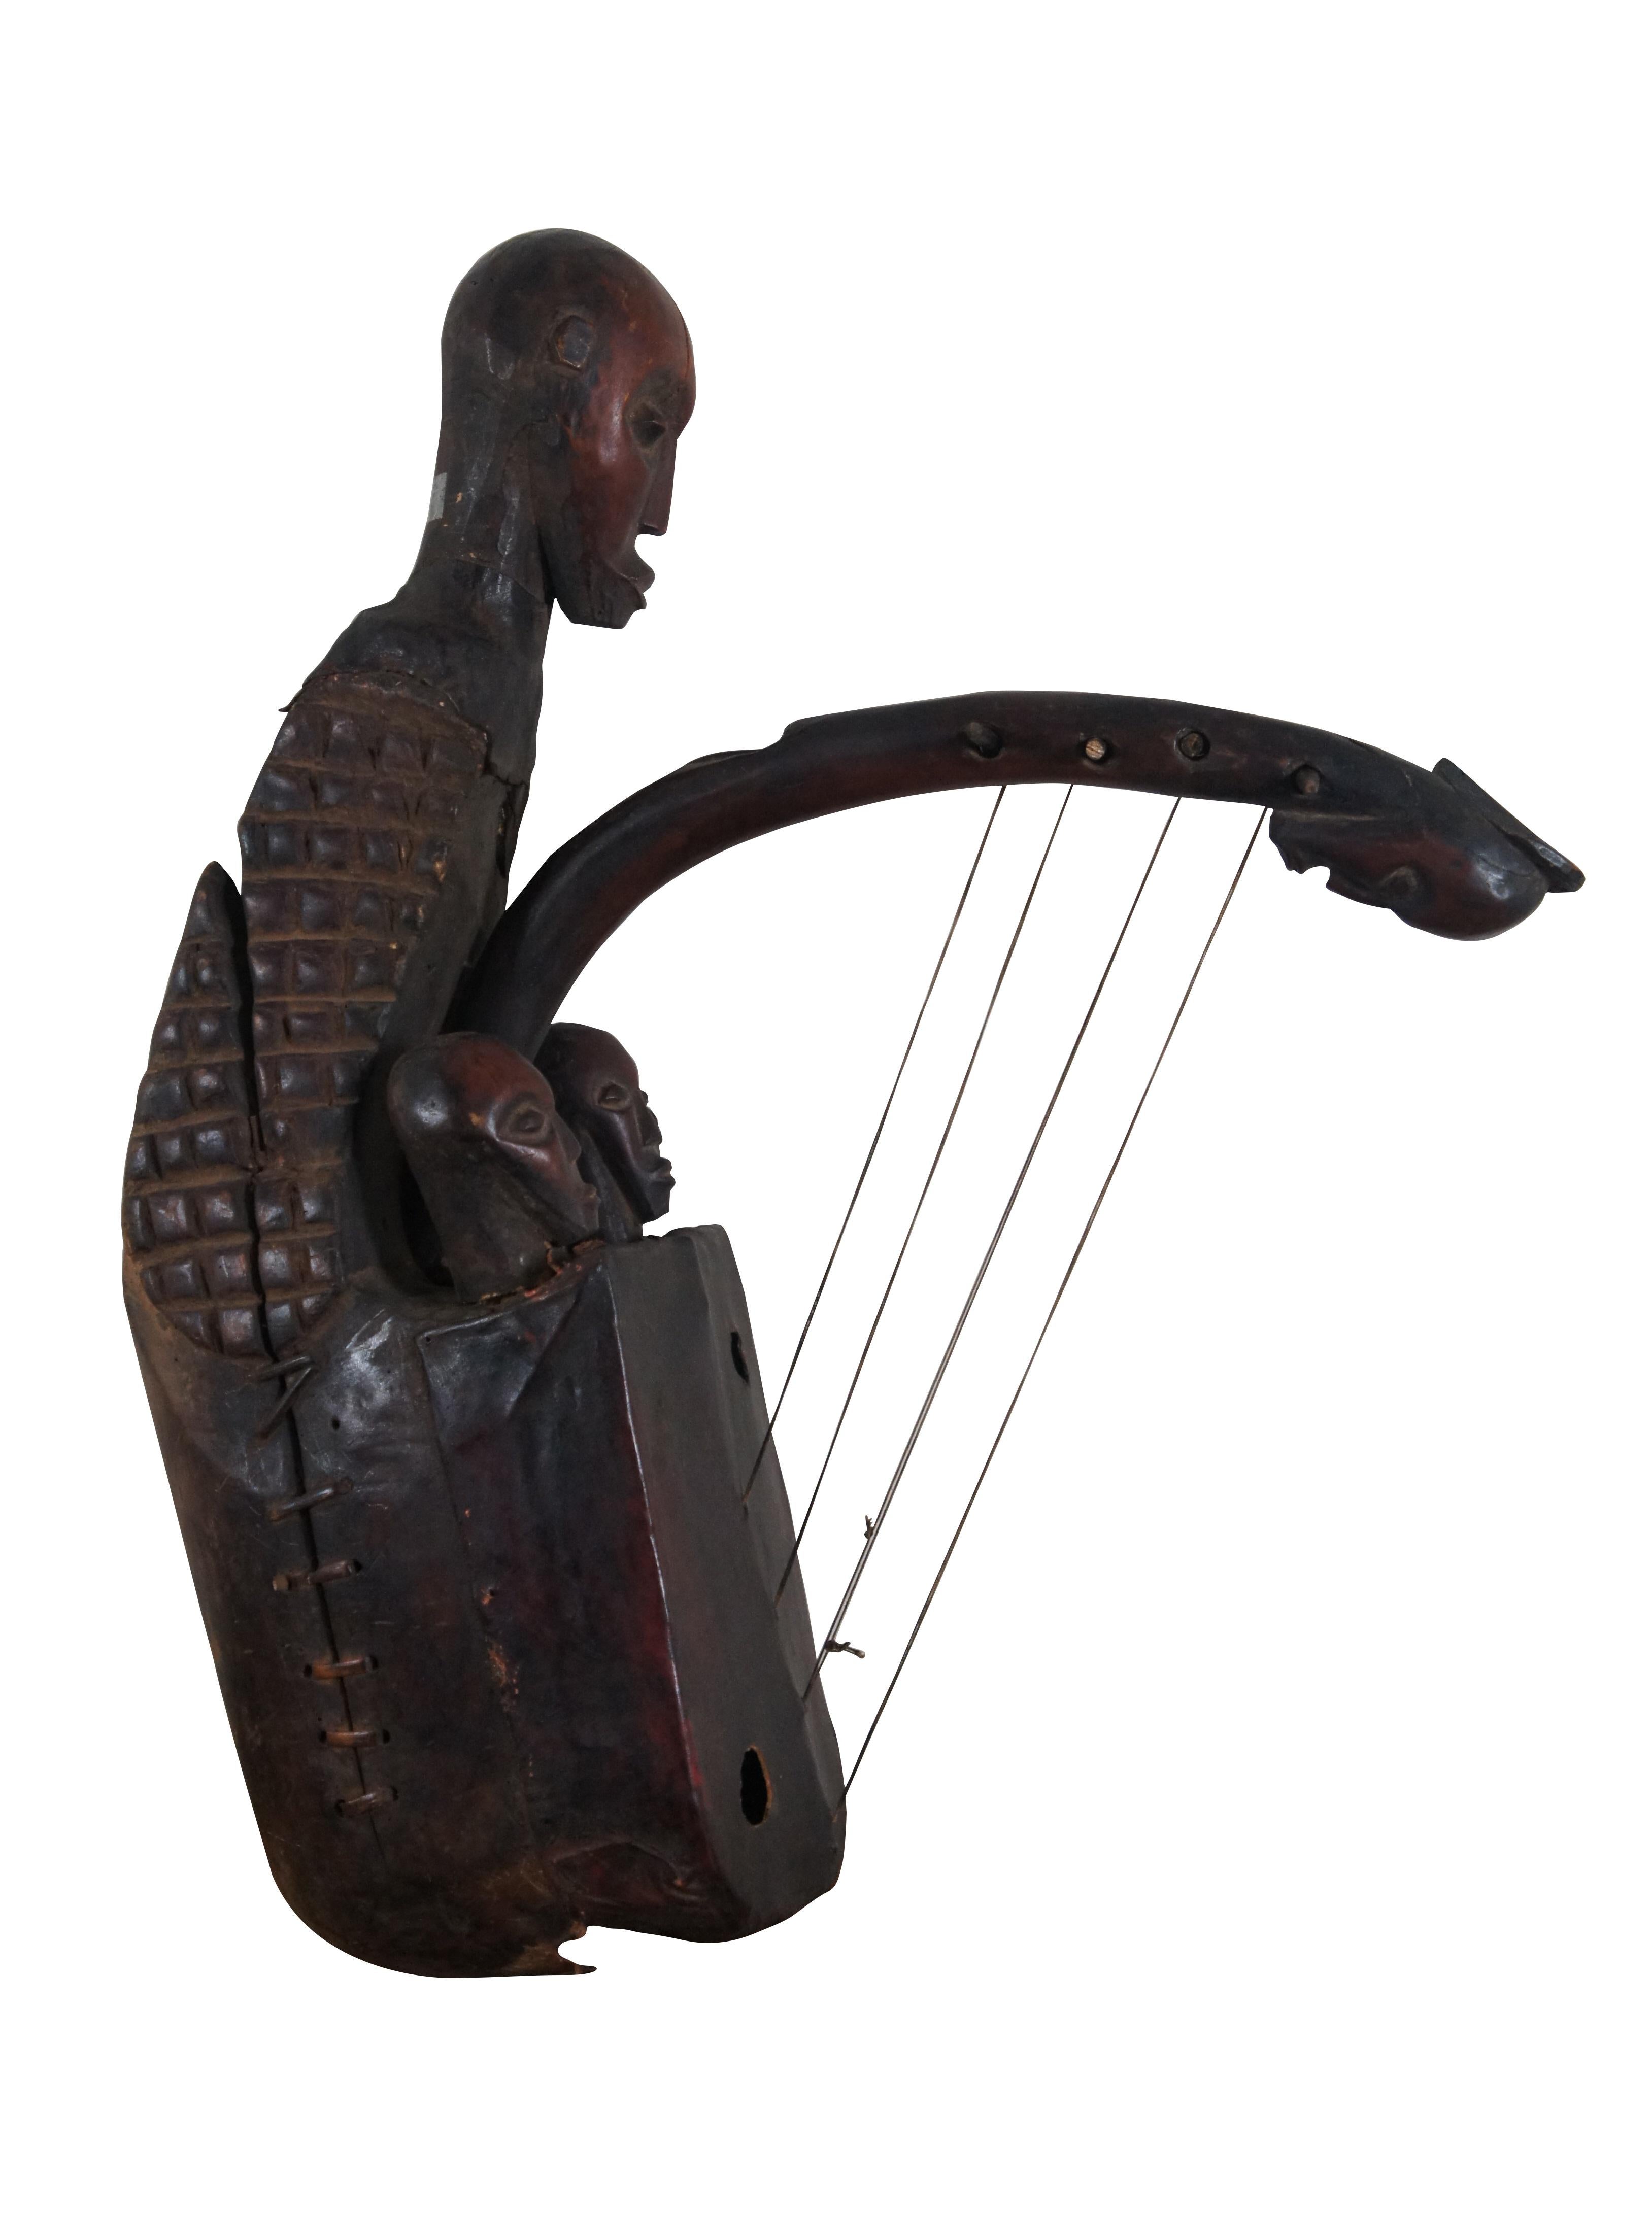 Rare harpe de fertilité Mangbetu / domu, un instrument à cordes africain du peuple Mangbetu, avec un corps rond en bois, une tête en cuir rouge tendue avec deux trous de son et quatre cordes sur des chevilles. Sculpté à la main, il a la forme d'un